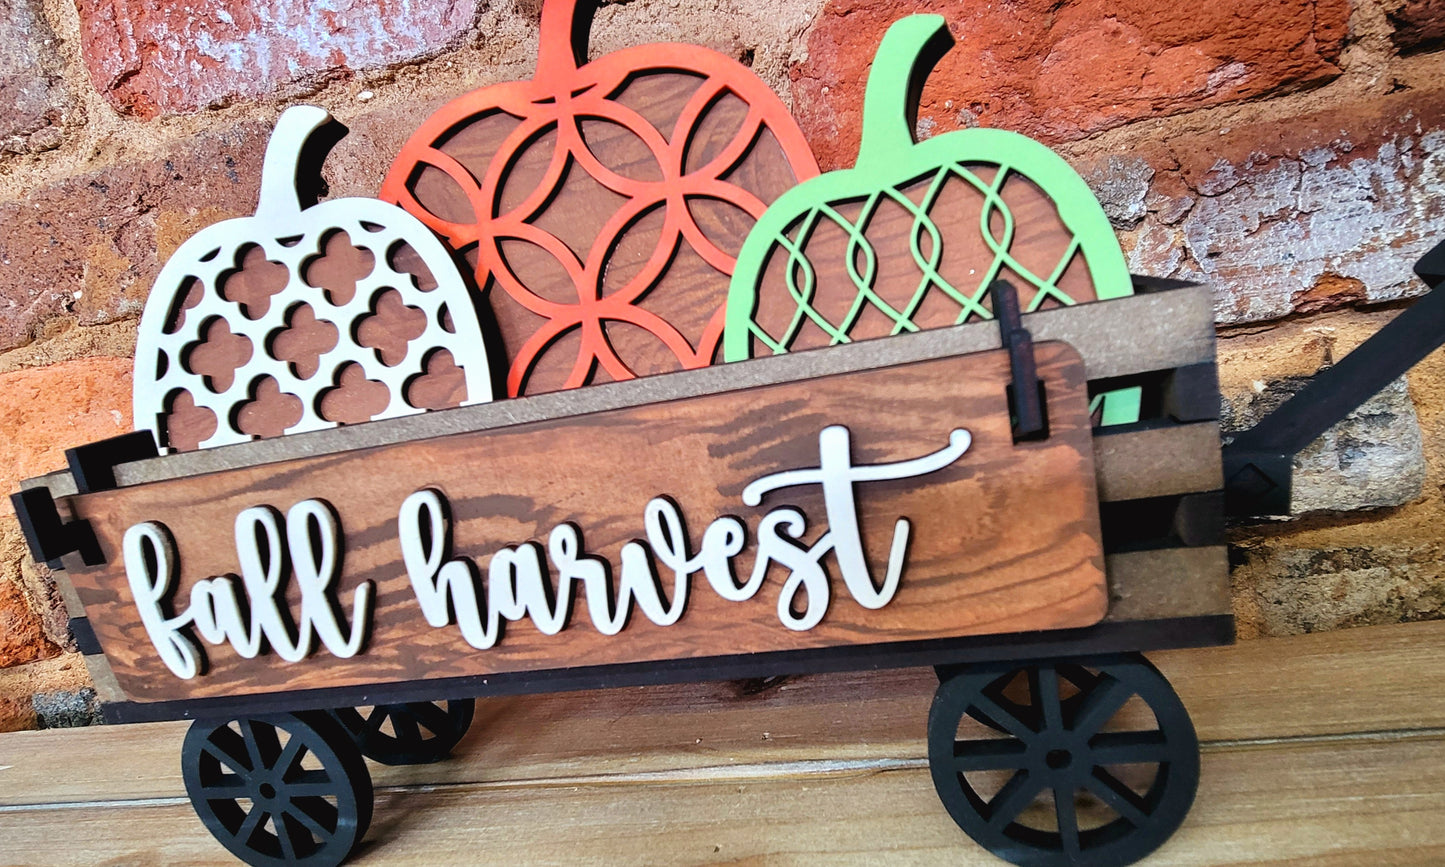 Wagon Shelf Sitter: Fall Harvest (full set)